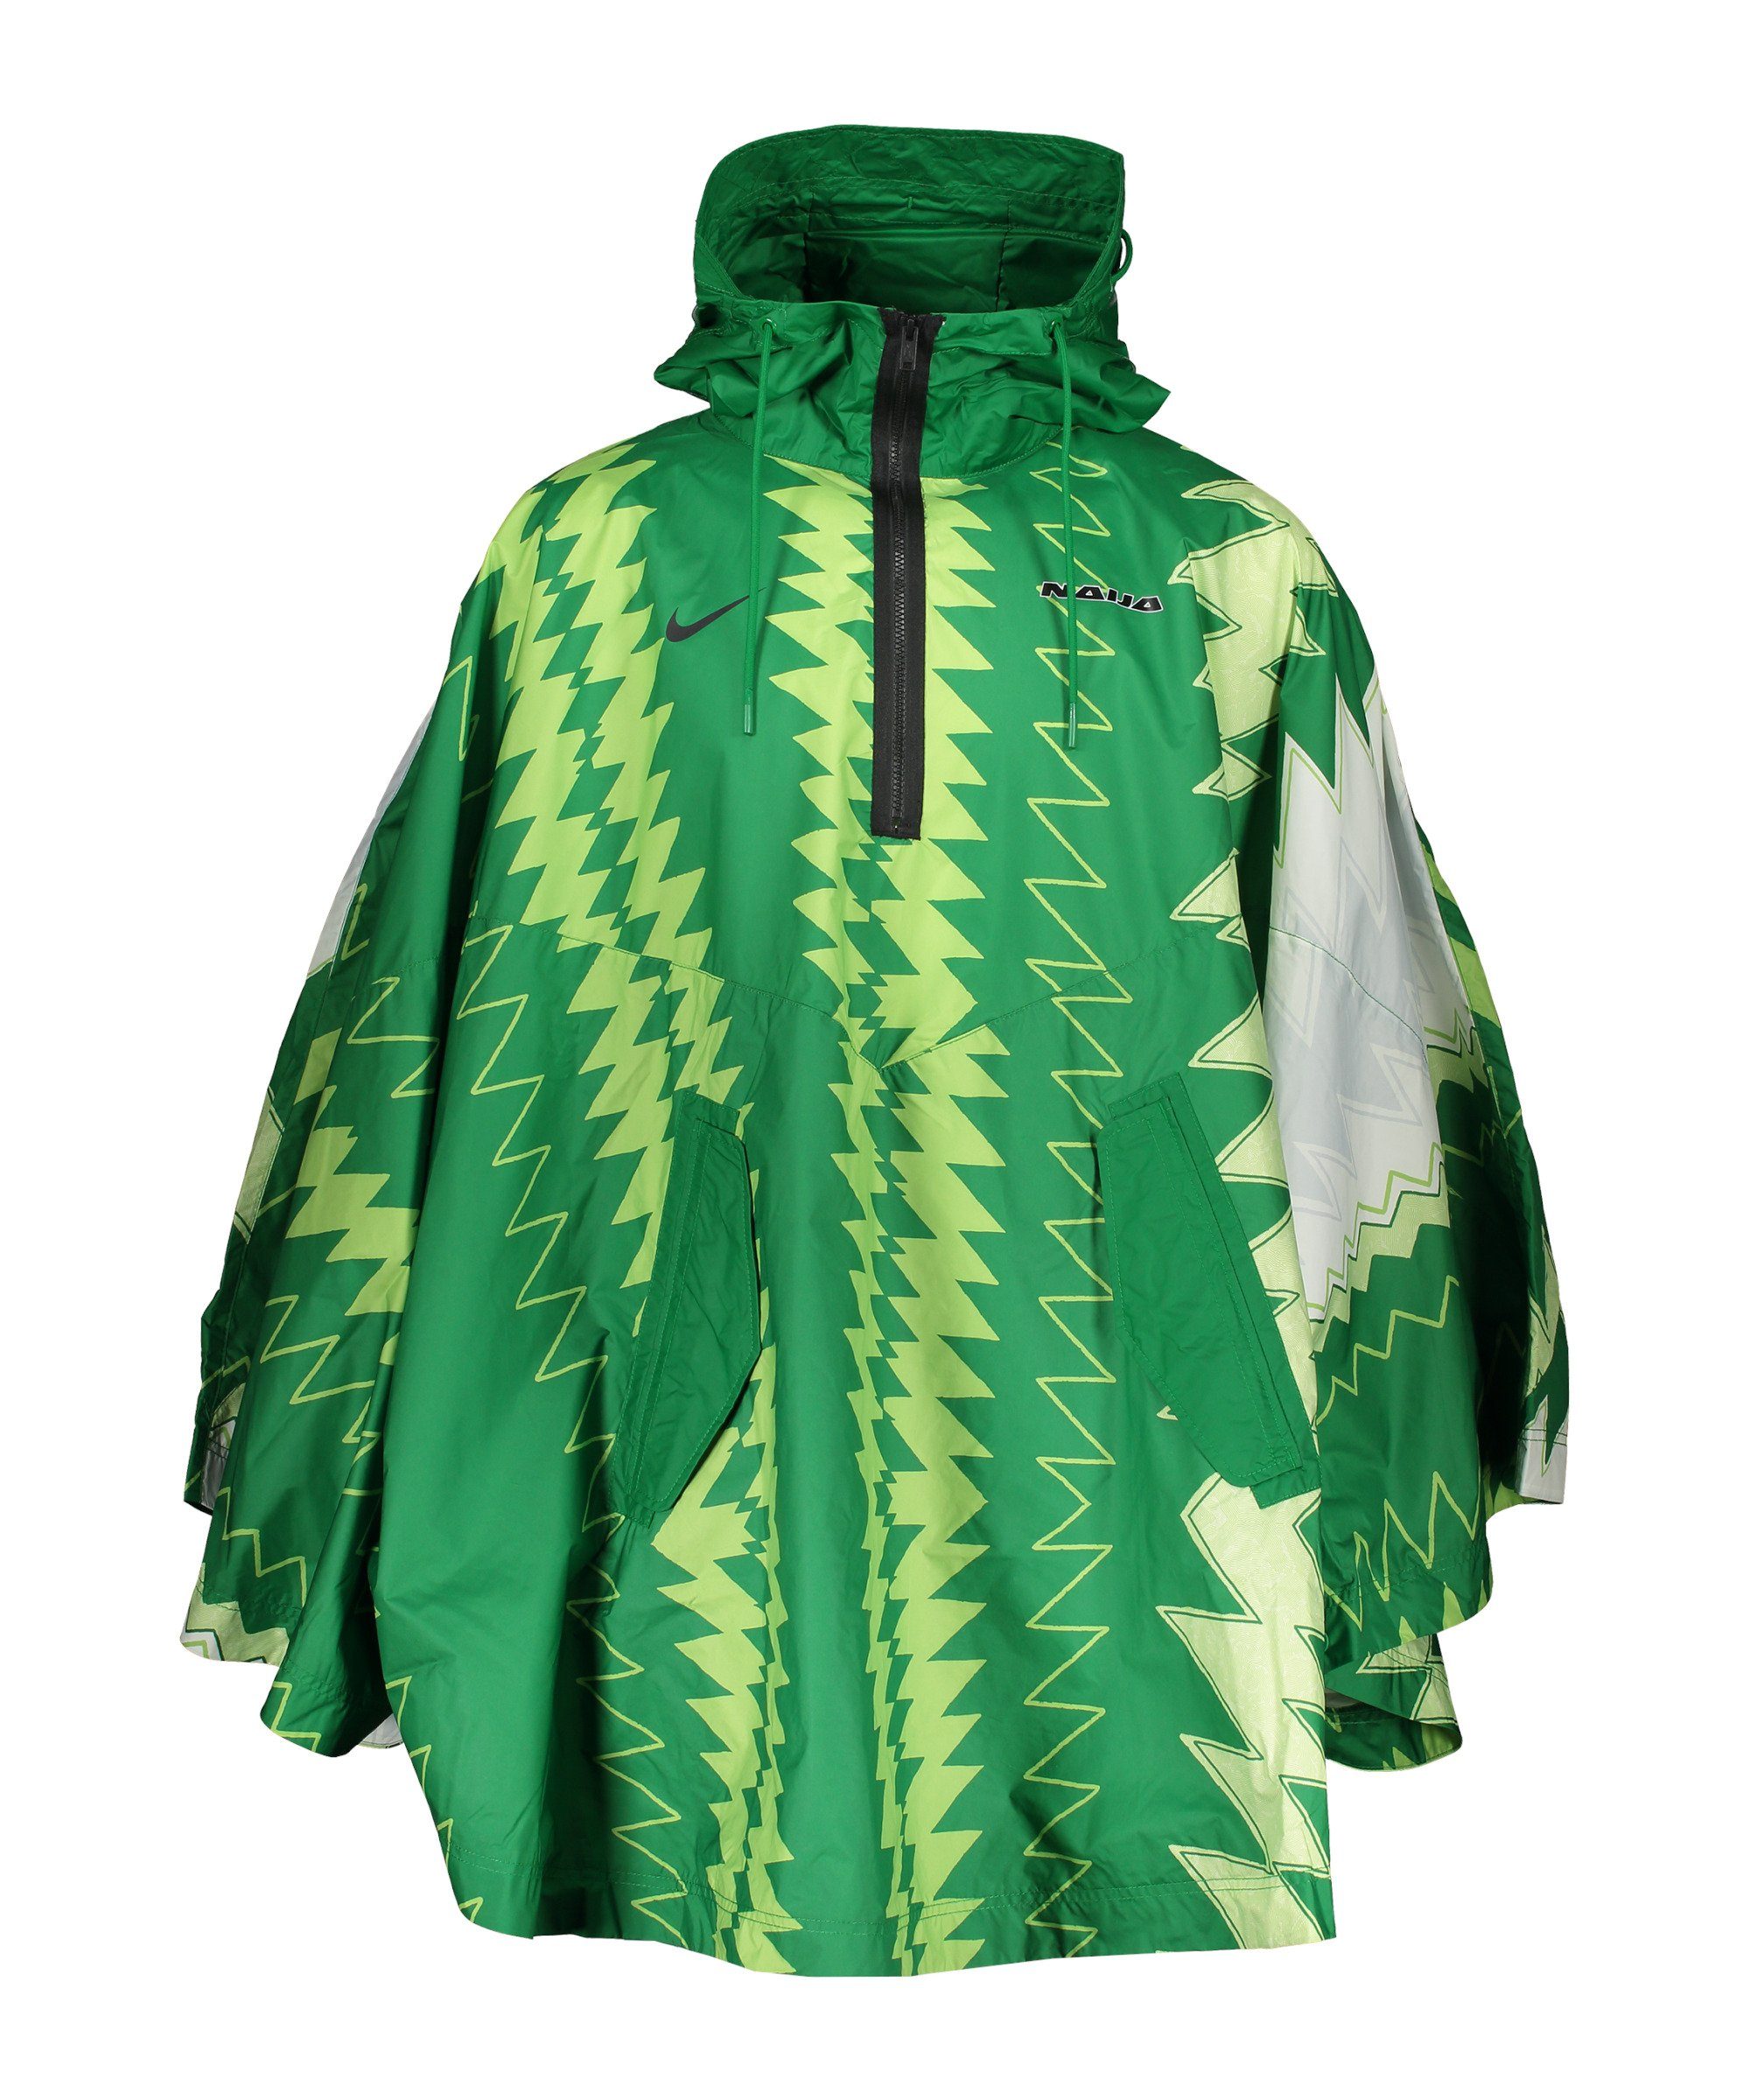 Nigeria Sweatjacke Poncho Sportswear Woven "Naija" Nike